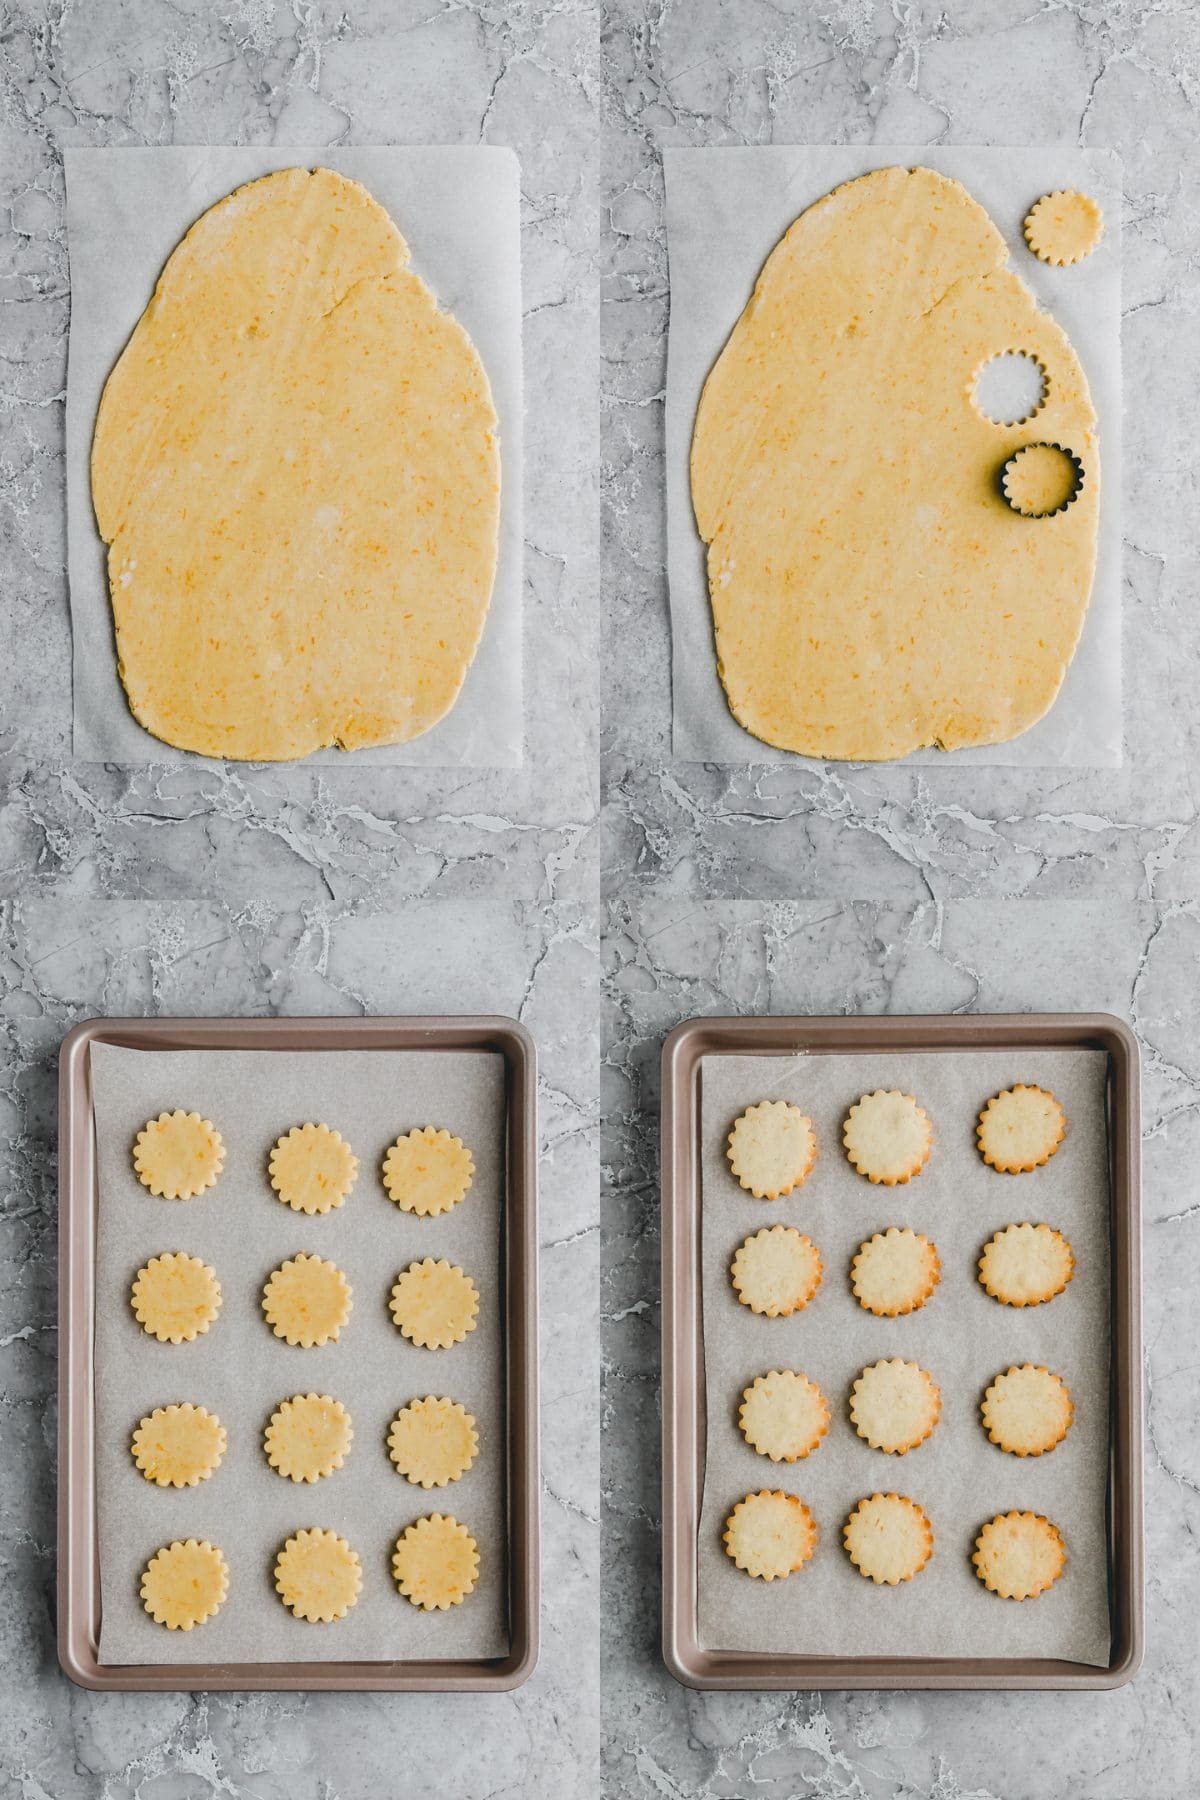 Orange Shortbread Cookies Recipe Step 6-9